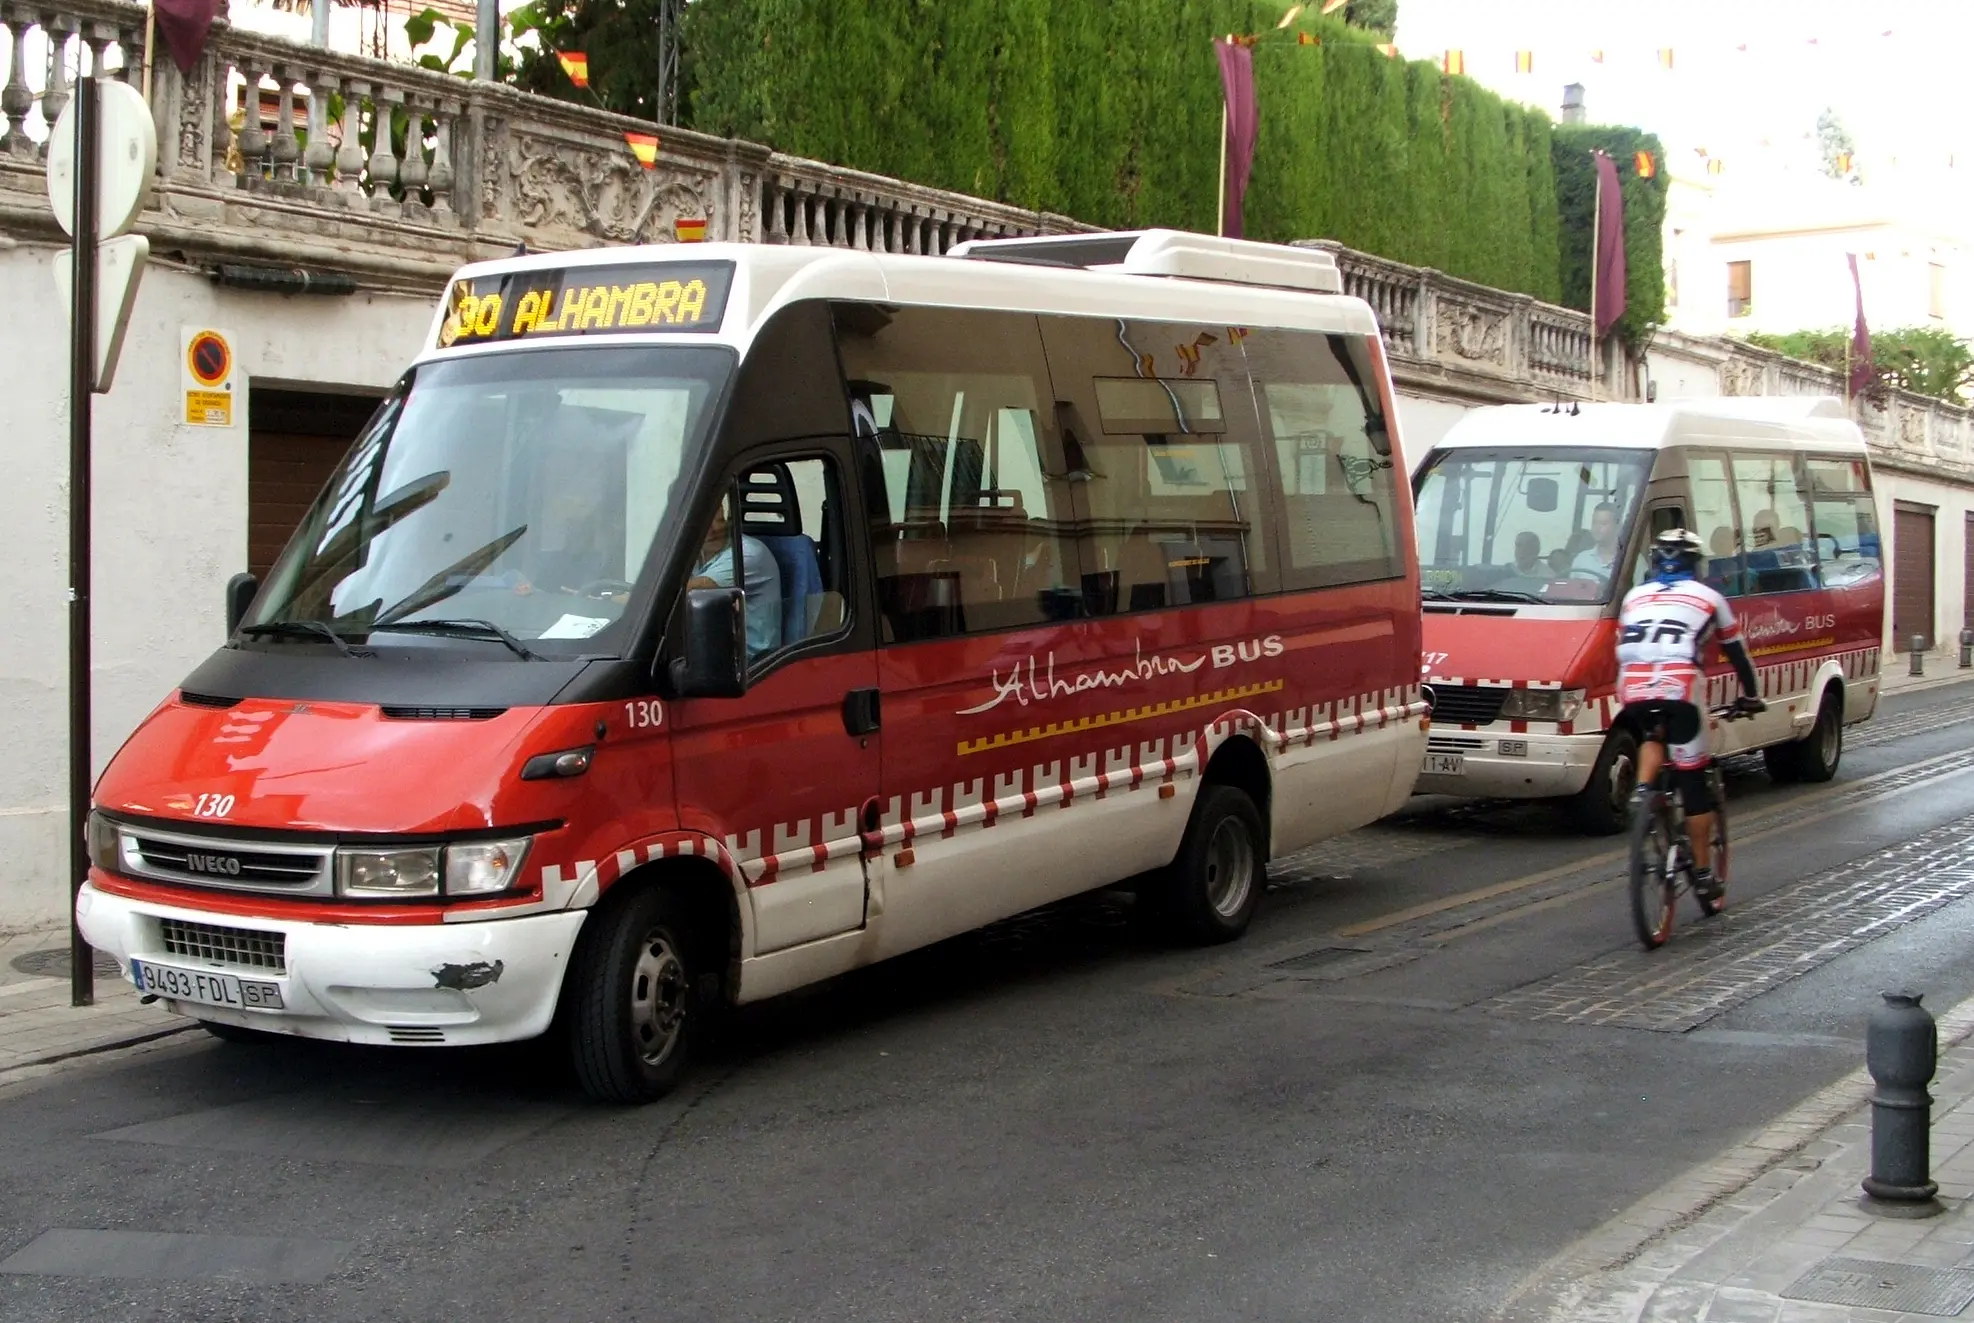 ave bus promocional alhambra - Cómo ir de la estación de autobuses a la Alhambra